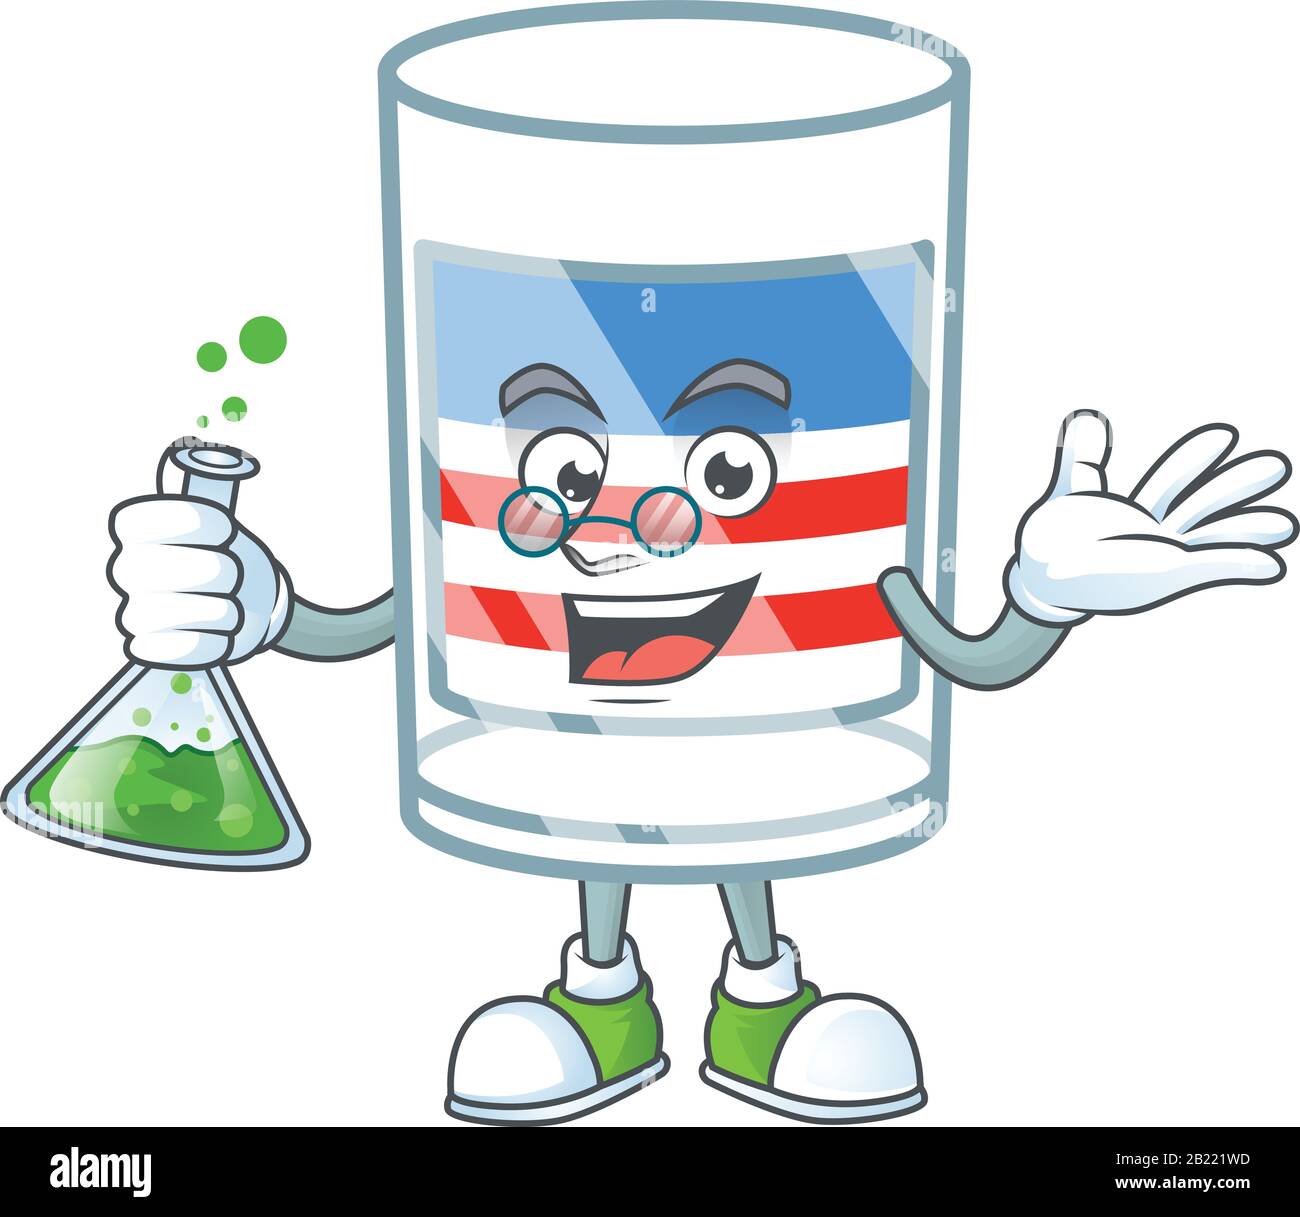 Un professeur de génie Etats-Unis raye le personnage de dessin animé en verre avec tube en verre Illustration de Vecteur